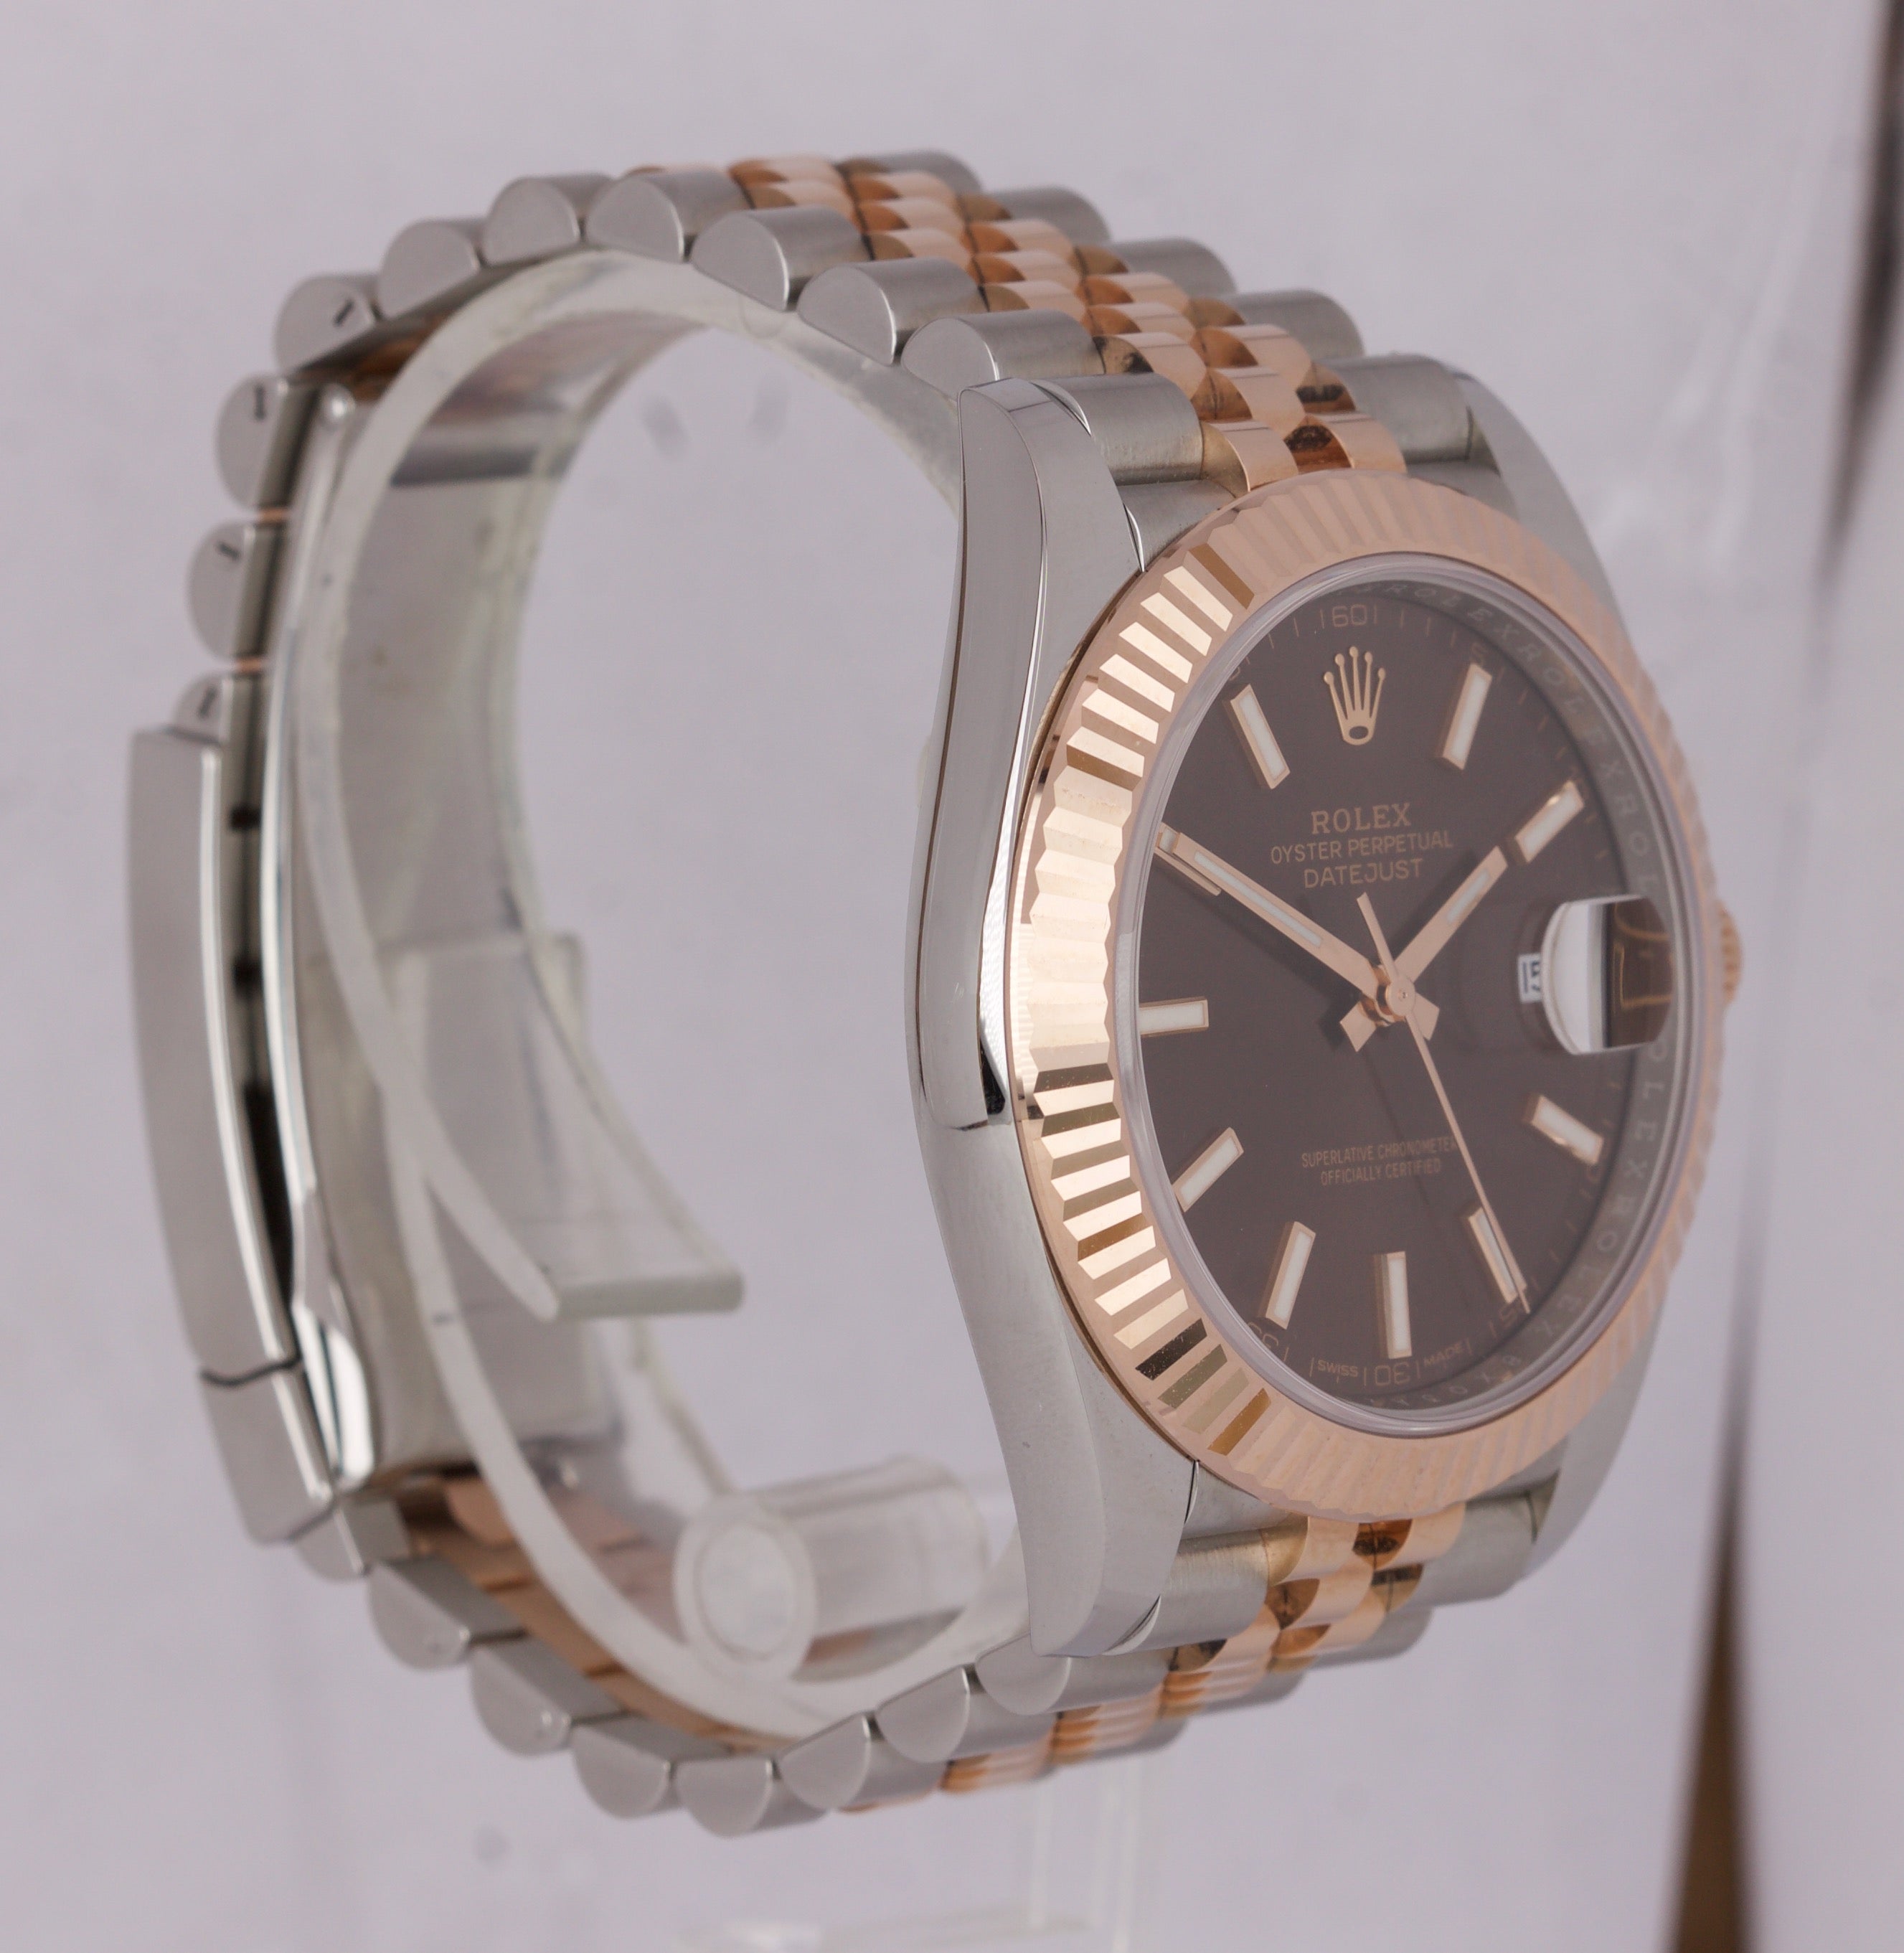 2019 Rolex DateJust 41 II 126331 Brown Everose Gold 18K Two-Tone Jubilee Watch